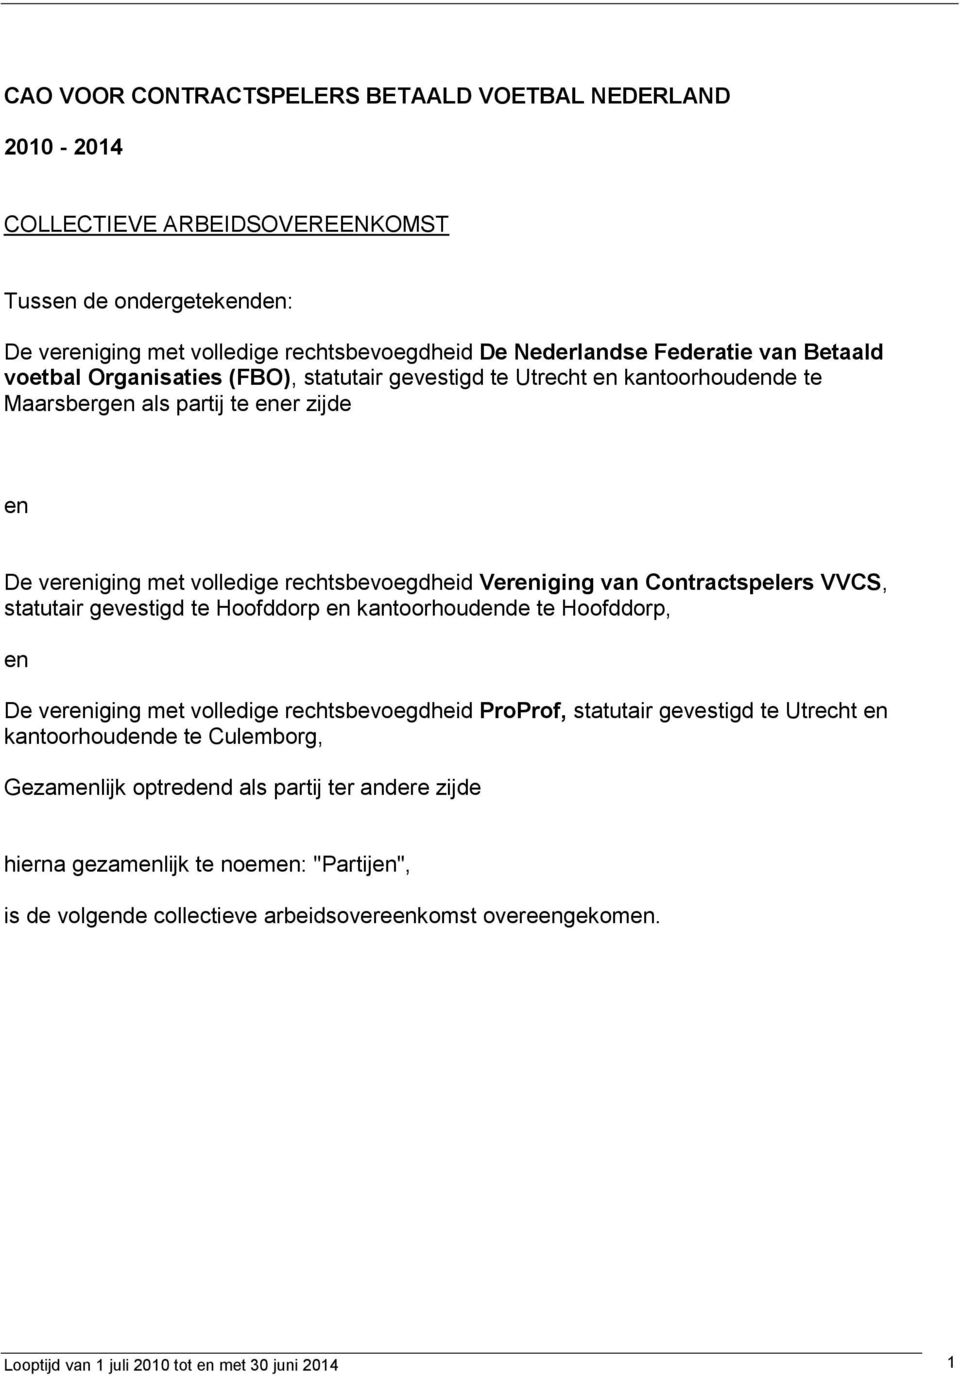 Contractspelers VVCS, statutair gevestigd te Hoofddorp en kantoorhoudende te Hoofddorp, en De vereniging met volledige rechtsbevoegdheid ProProf, statutair gevestigd te Utrecht en kantoorhoudende te